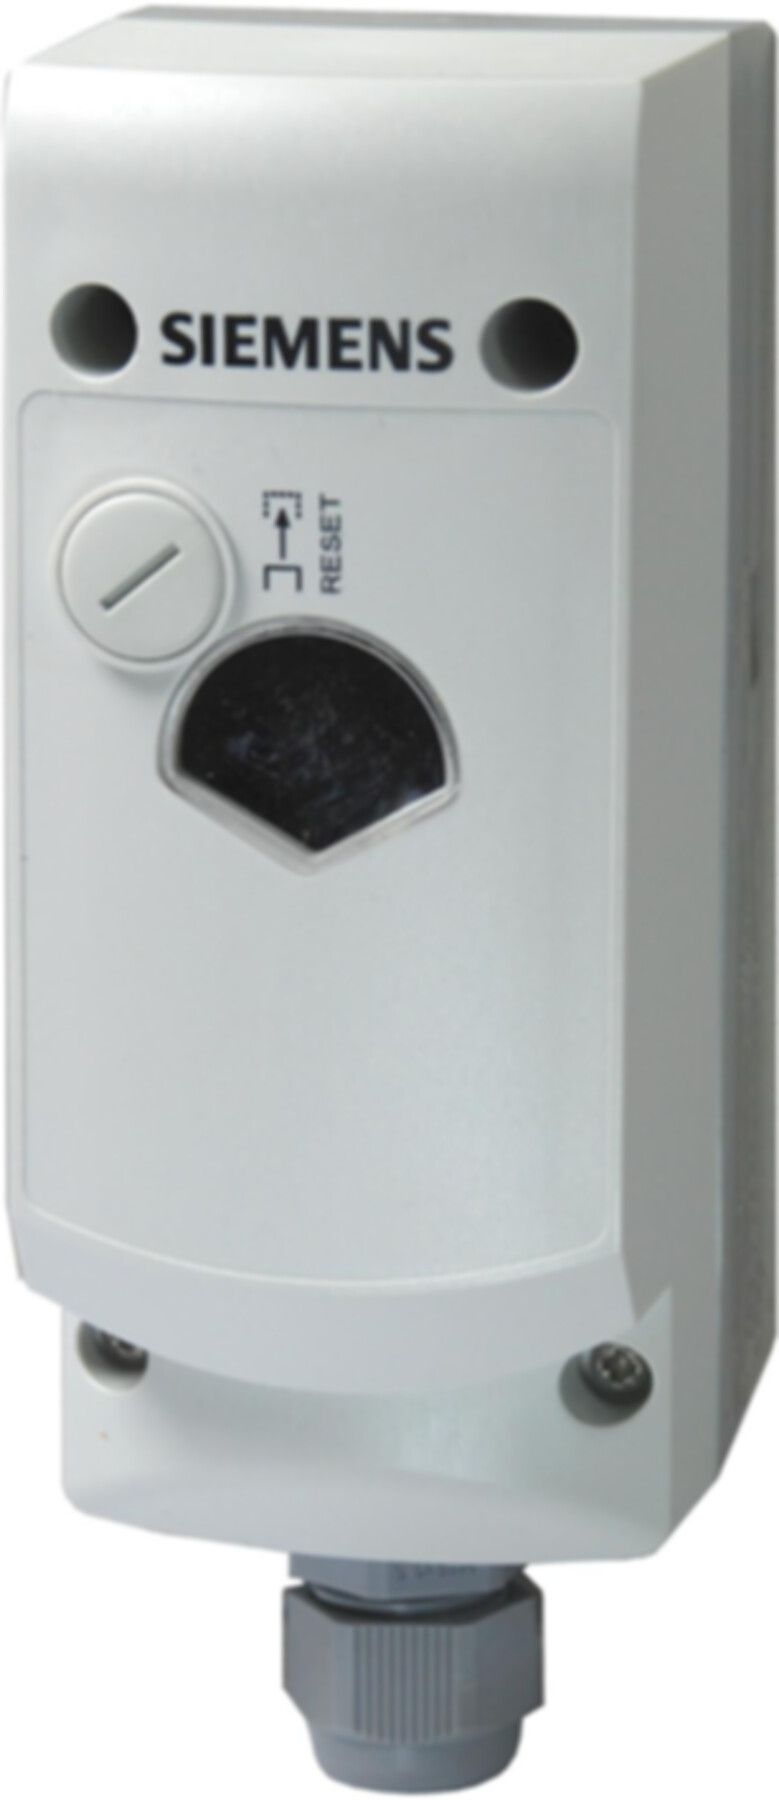 Sicherheitsthermostat RAK-TB 1400S-M m/Temperaturbegrenzer 45- 60°C - Siemens Steuerungen